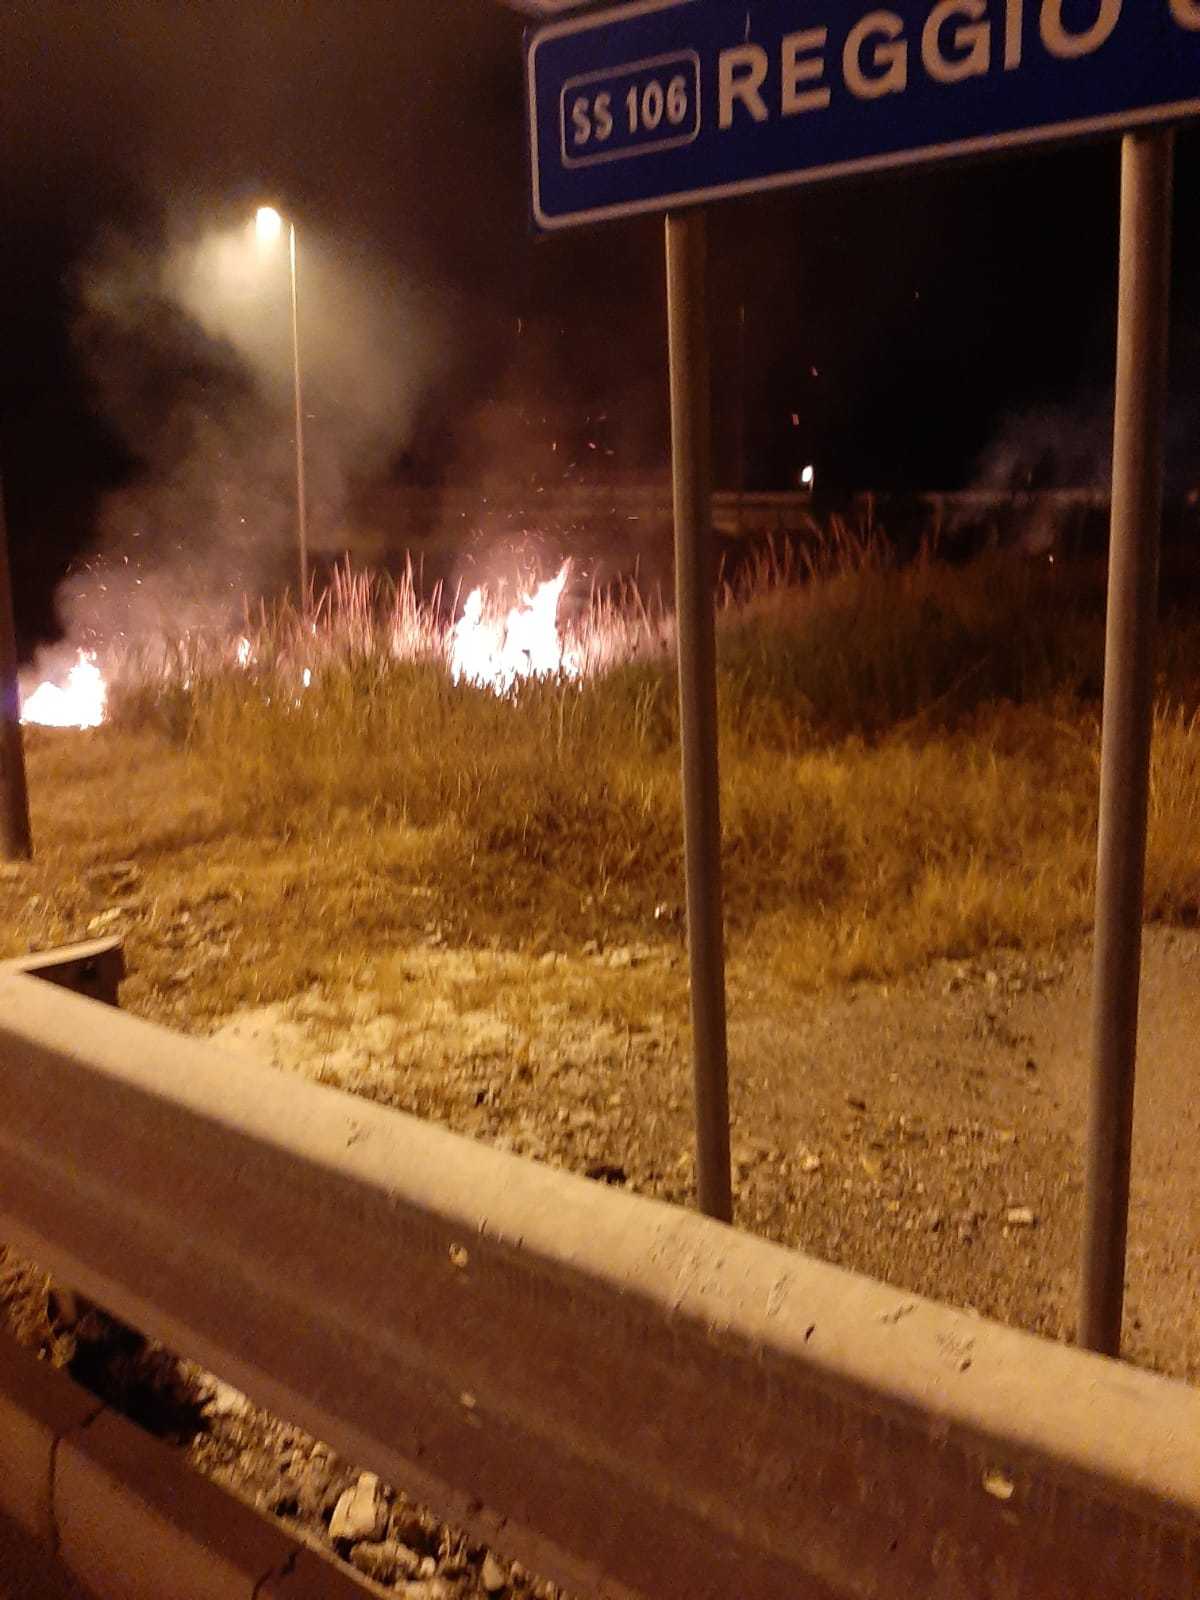 Incendio doloso nei pressi di archeoderi, dura condanna del sindaco di Bova Marina Zavettieri